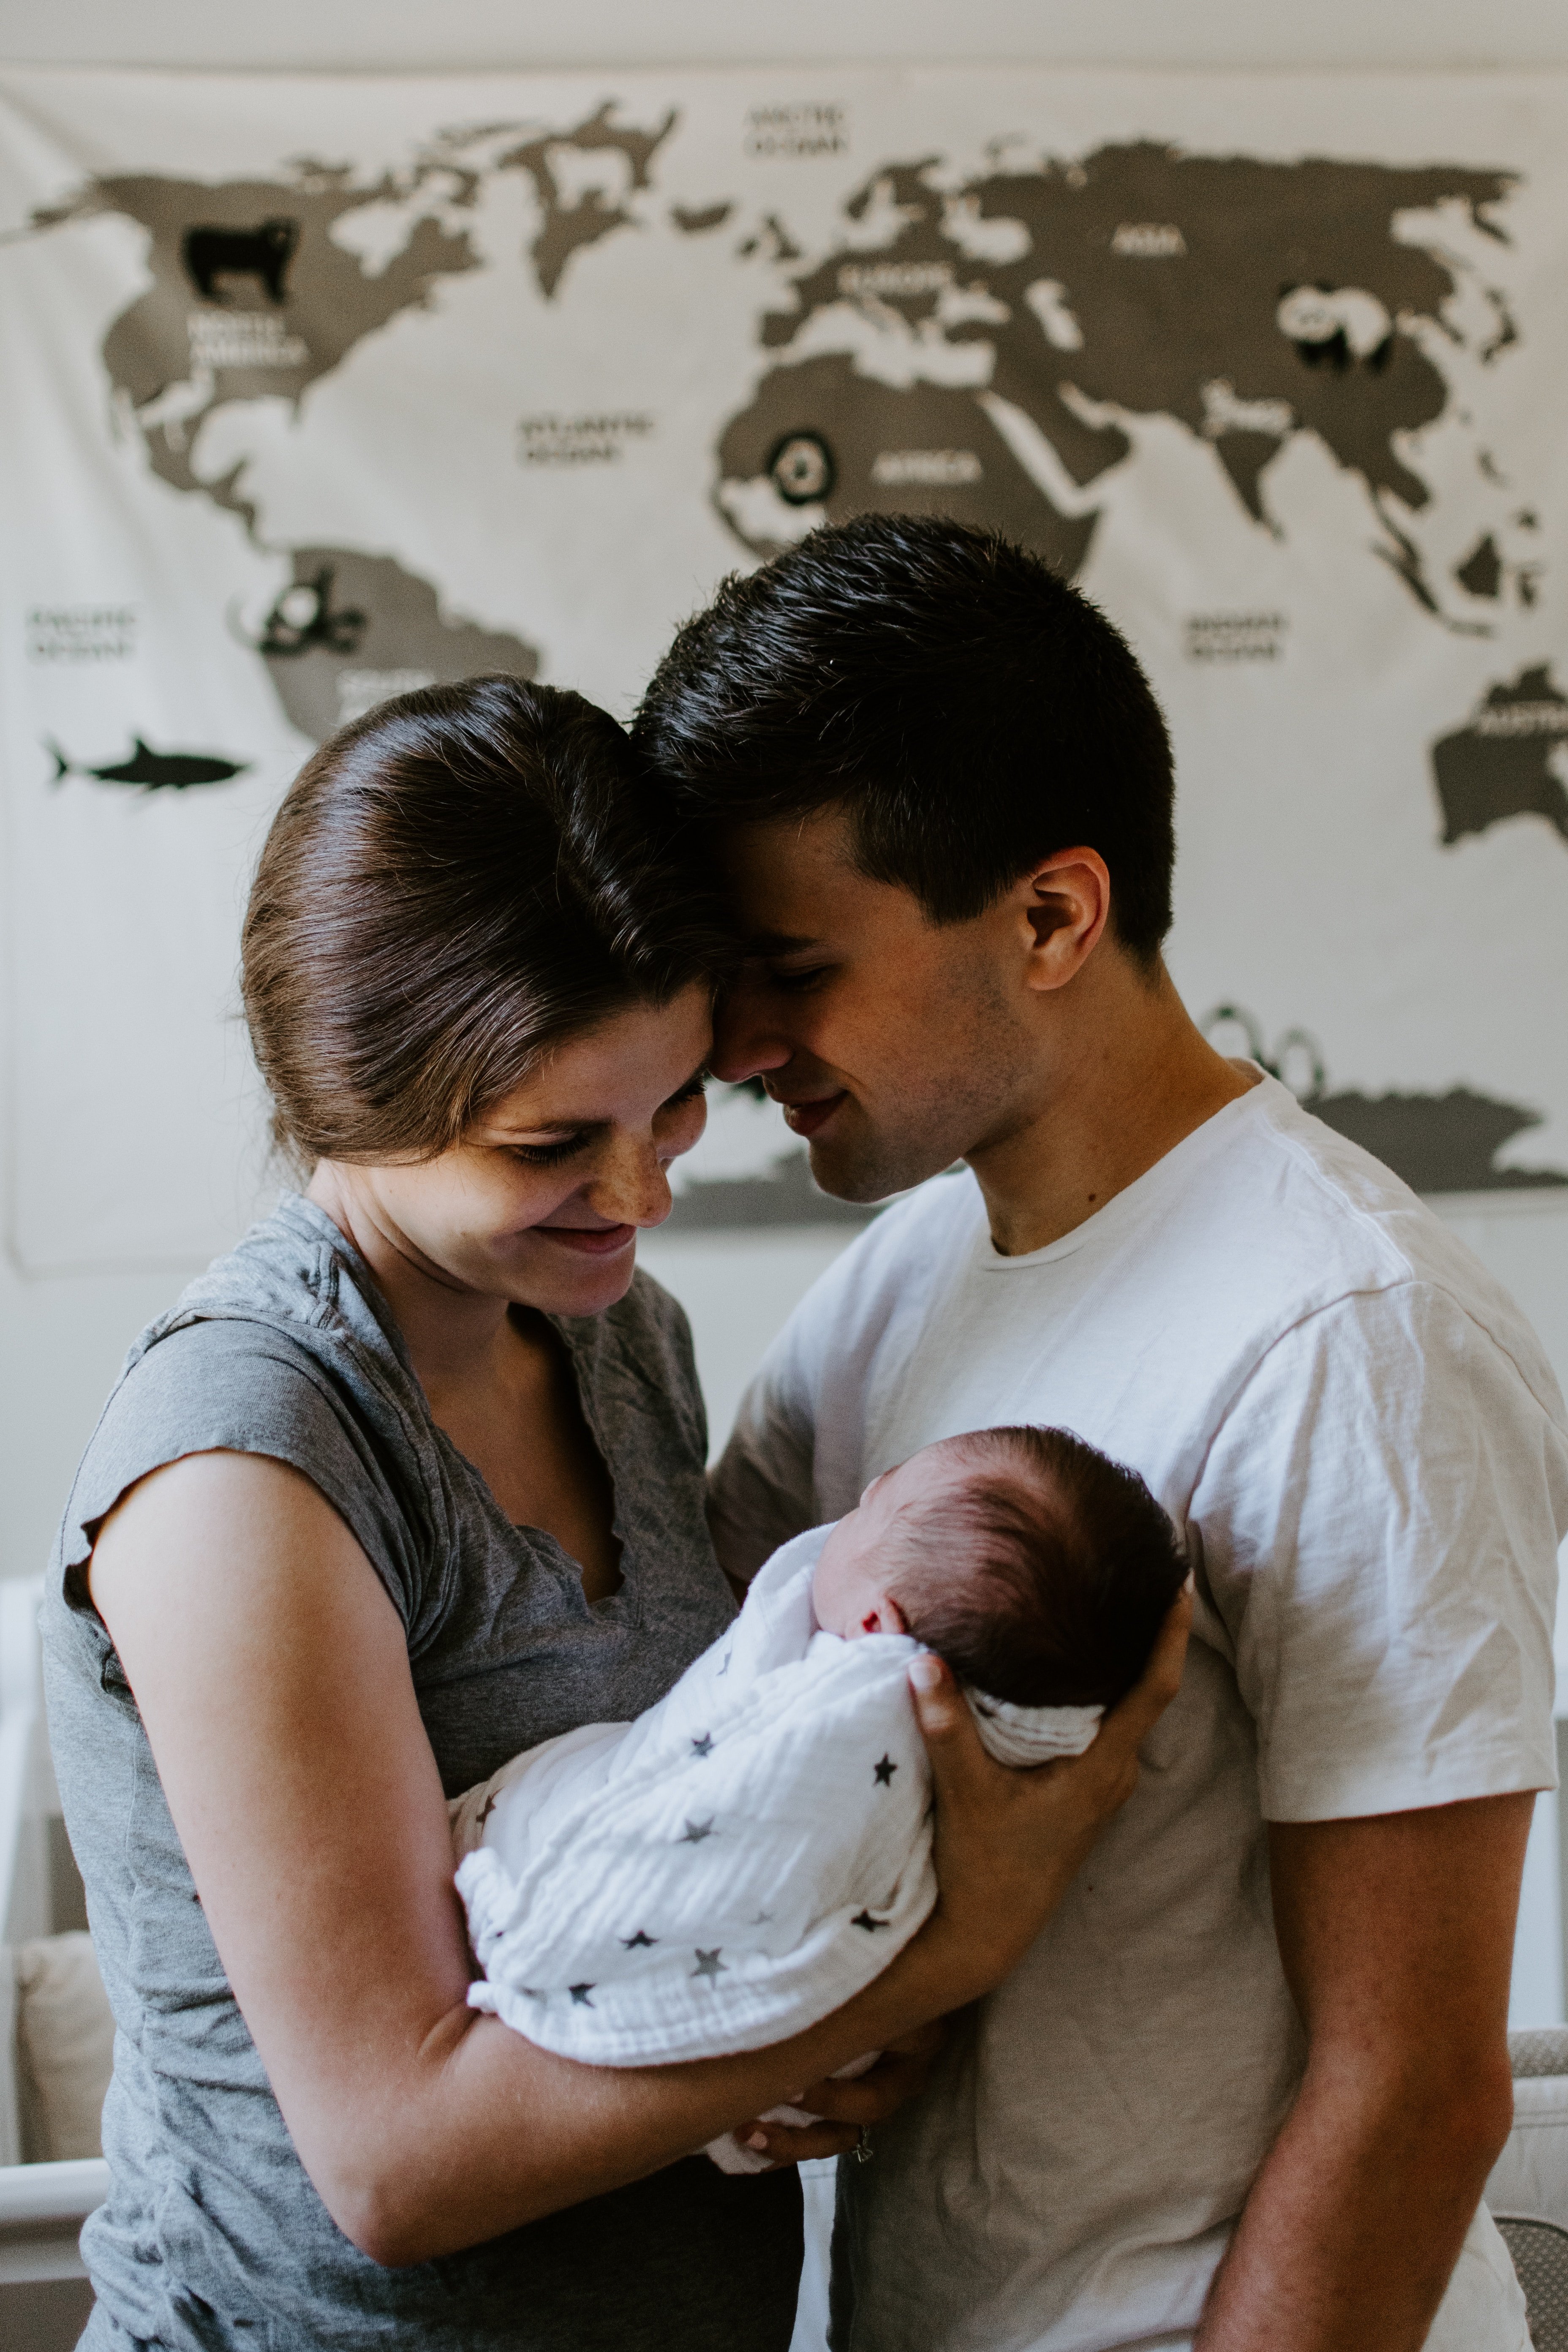 Proud parents holding a newborn baby | Source: Unsplash.com